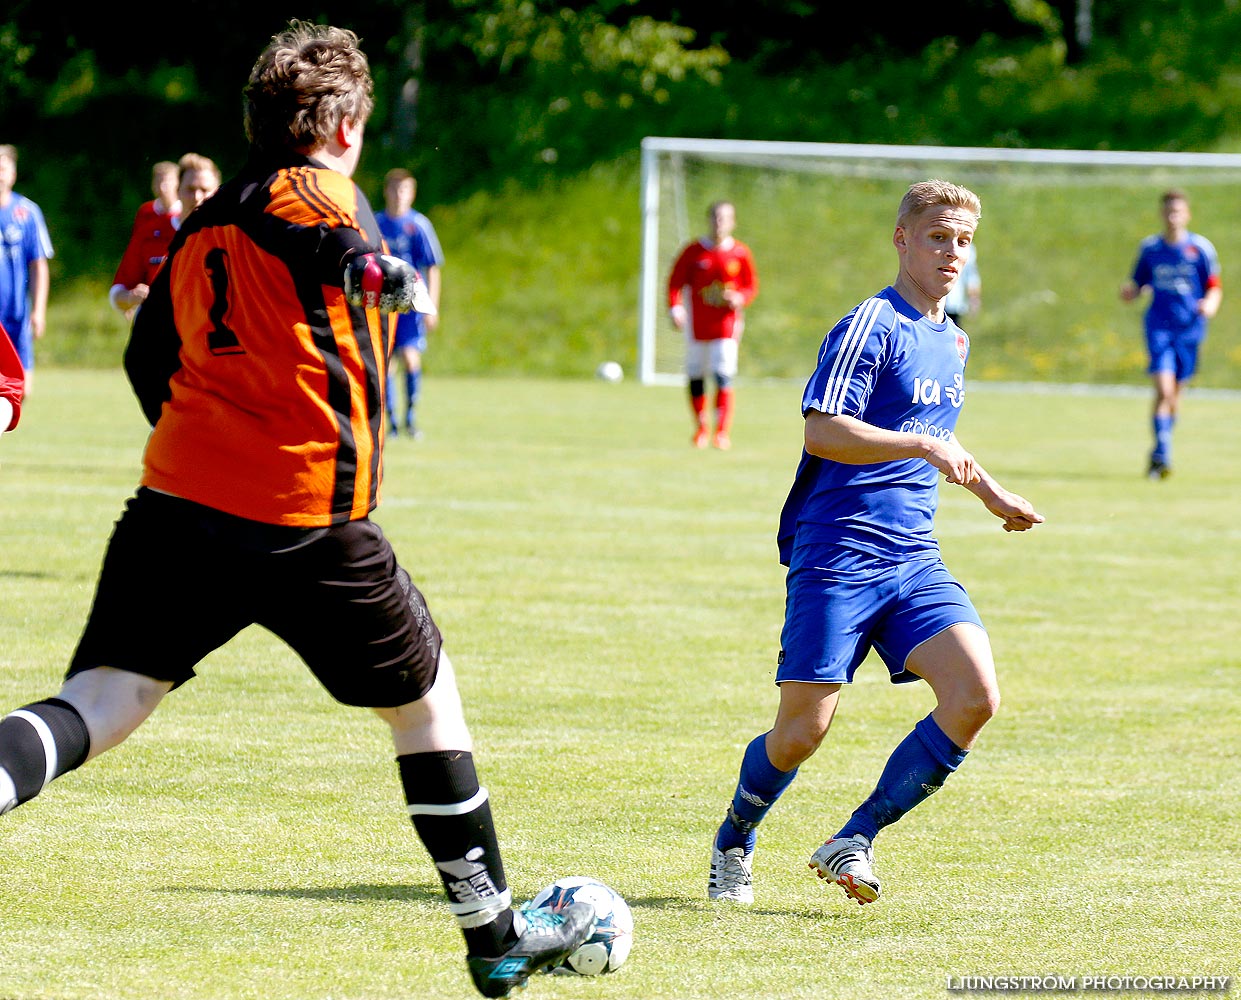 Lerdala IF-Saleby IF 4-3,herr,Lerdala IP,Lerdala,Sverige,Fotboll,,2014,89824